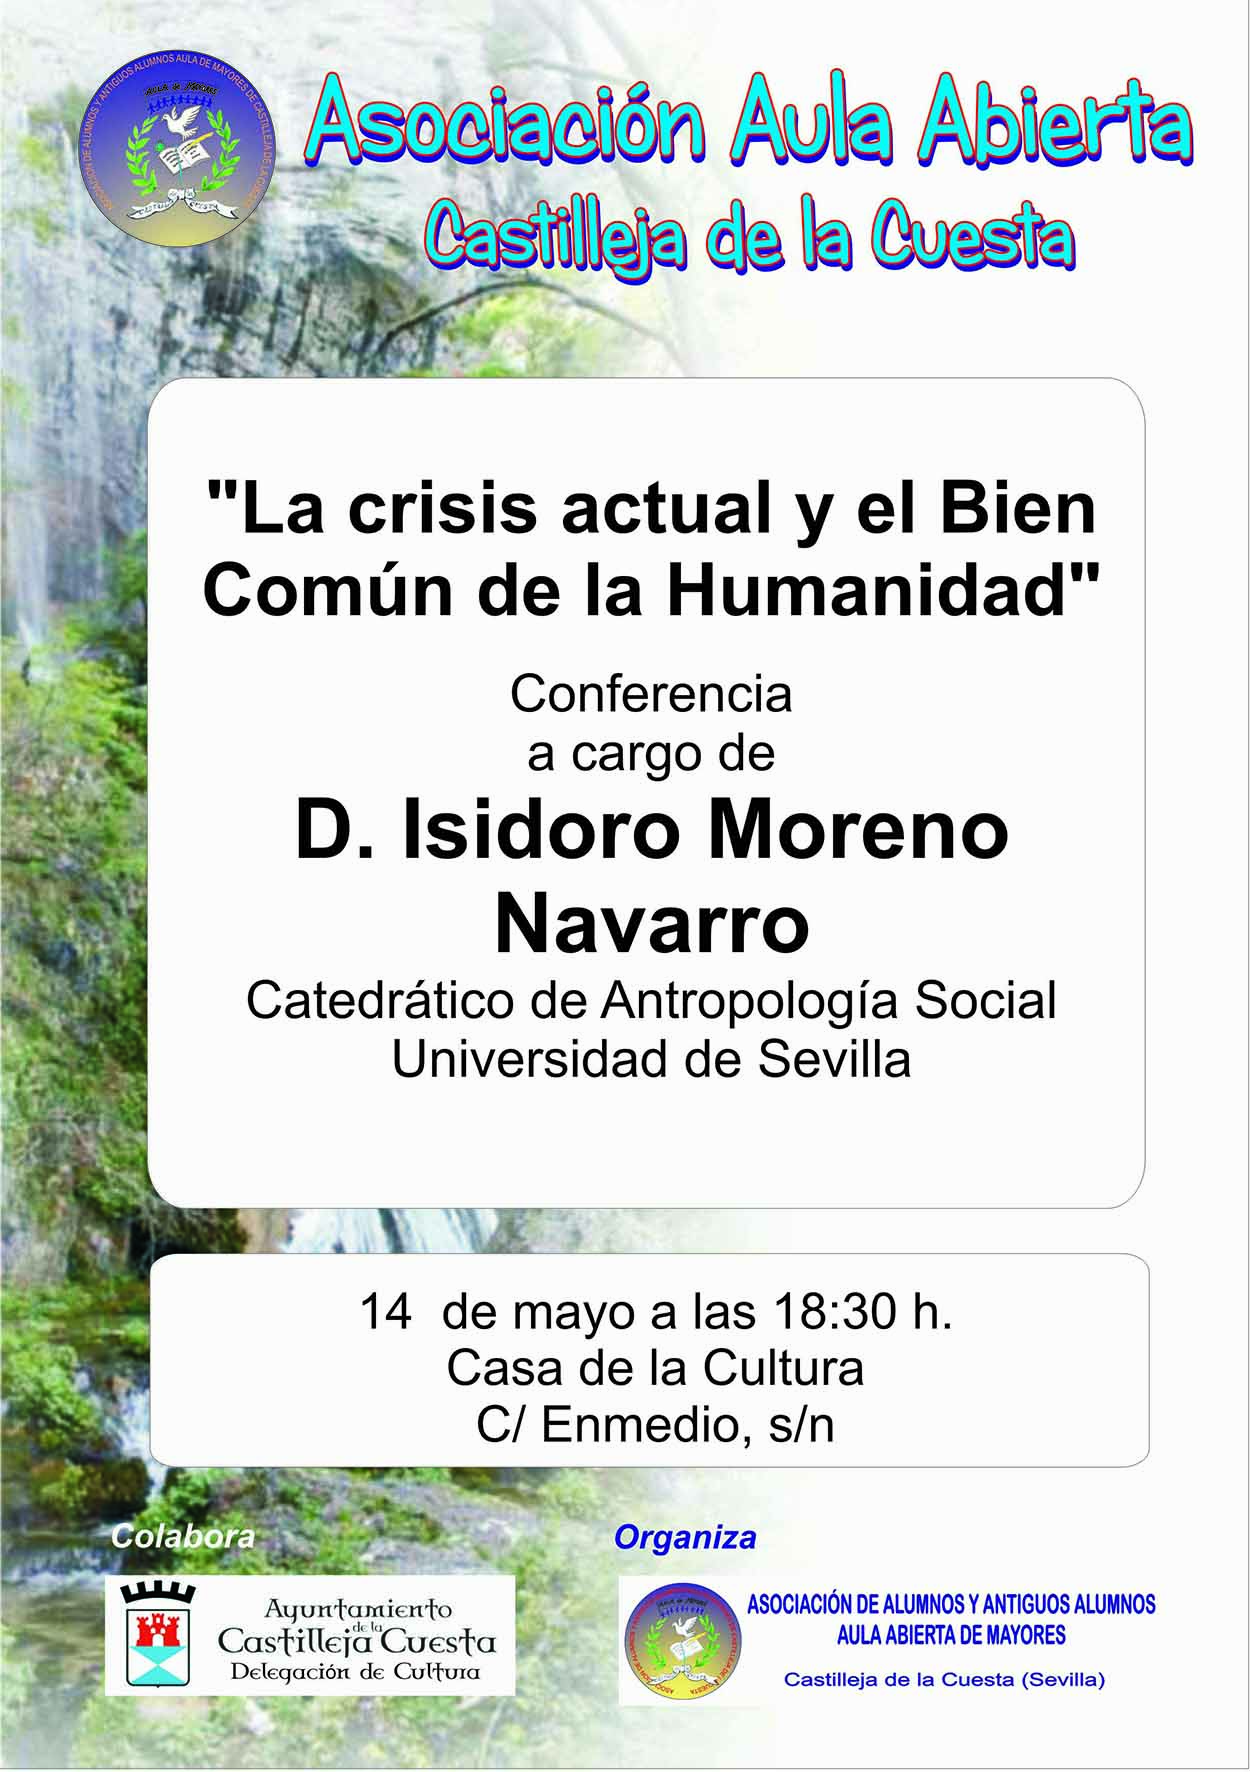 Conferencia: "La crisis actual y el Bien Común de la Humanidad"